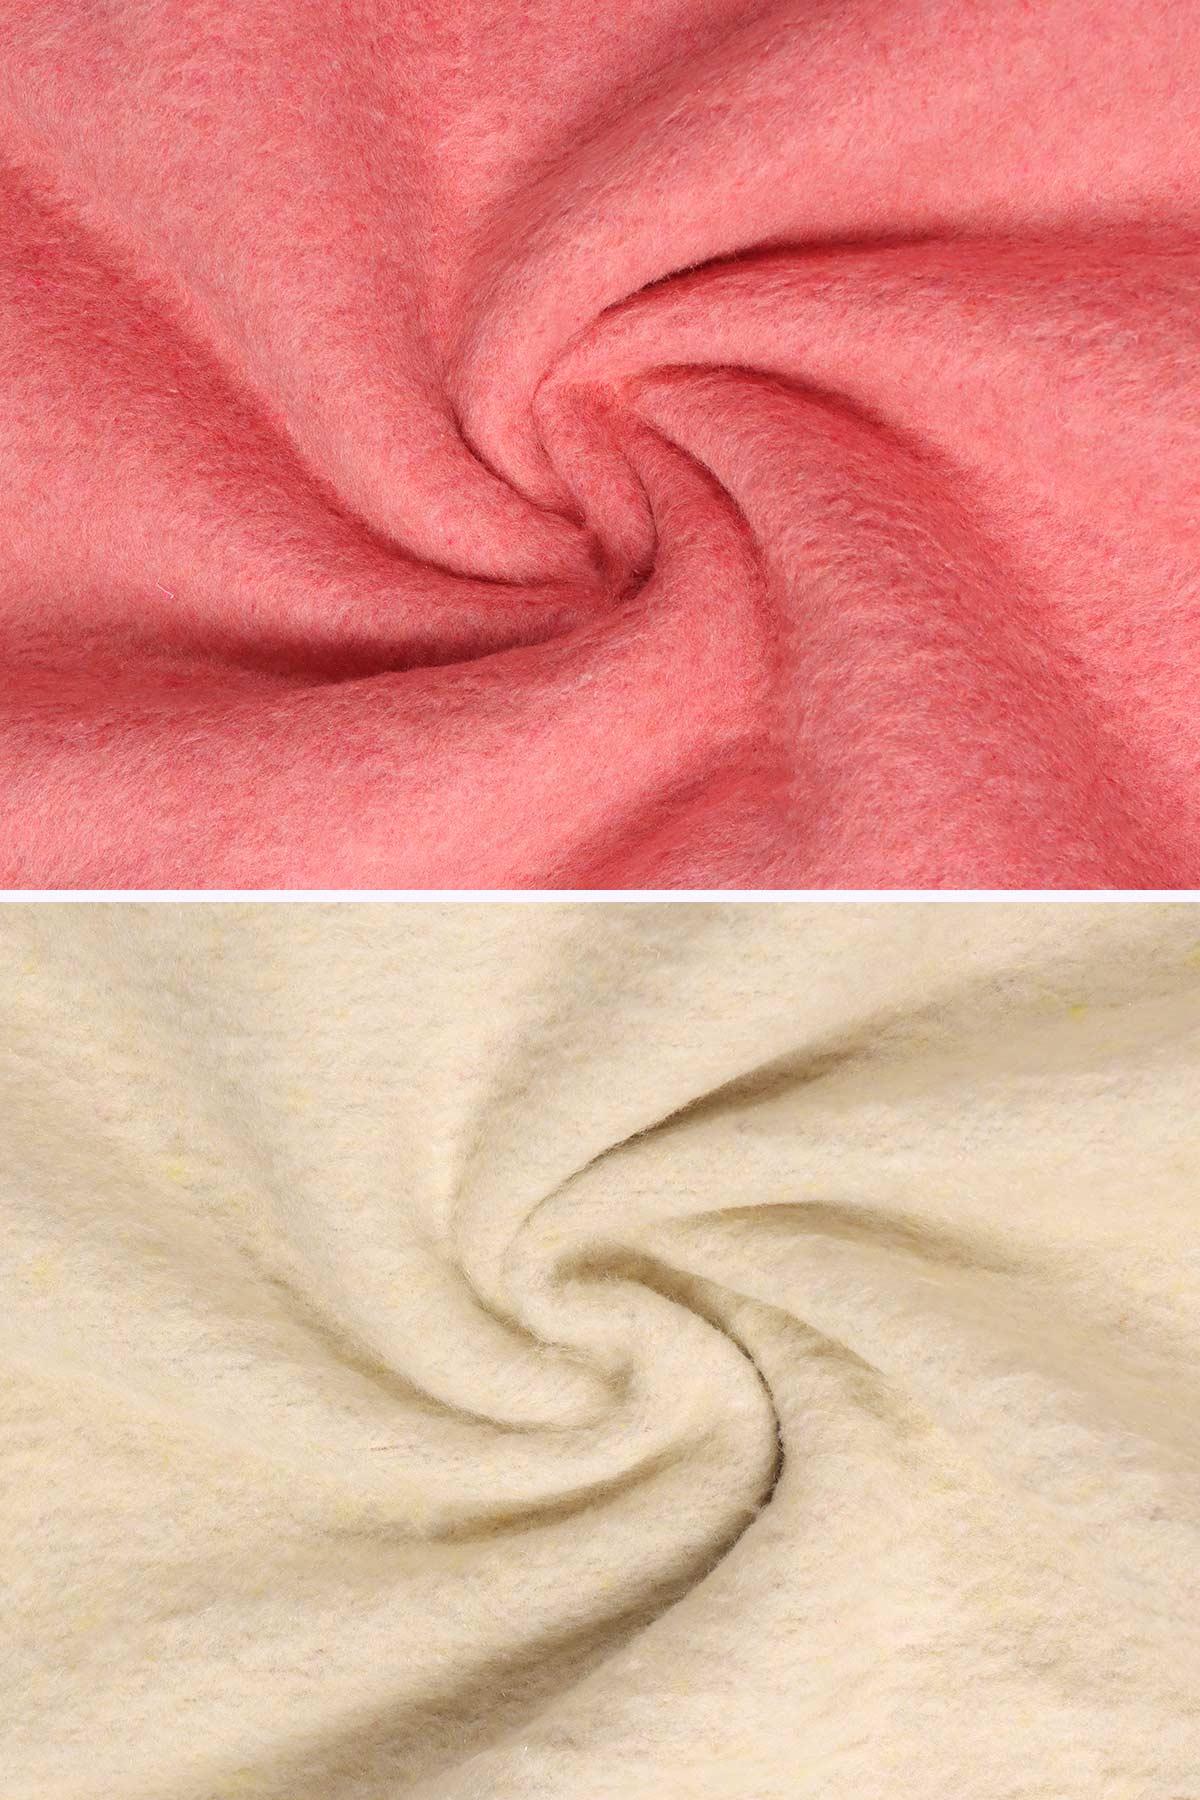 yesilhome tek kisilik pamuk battaniye cift tarafli battaniye pembe krem 120033.jpg